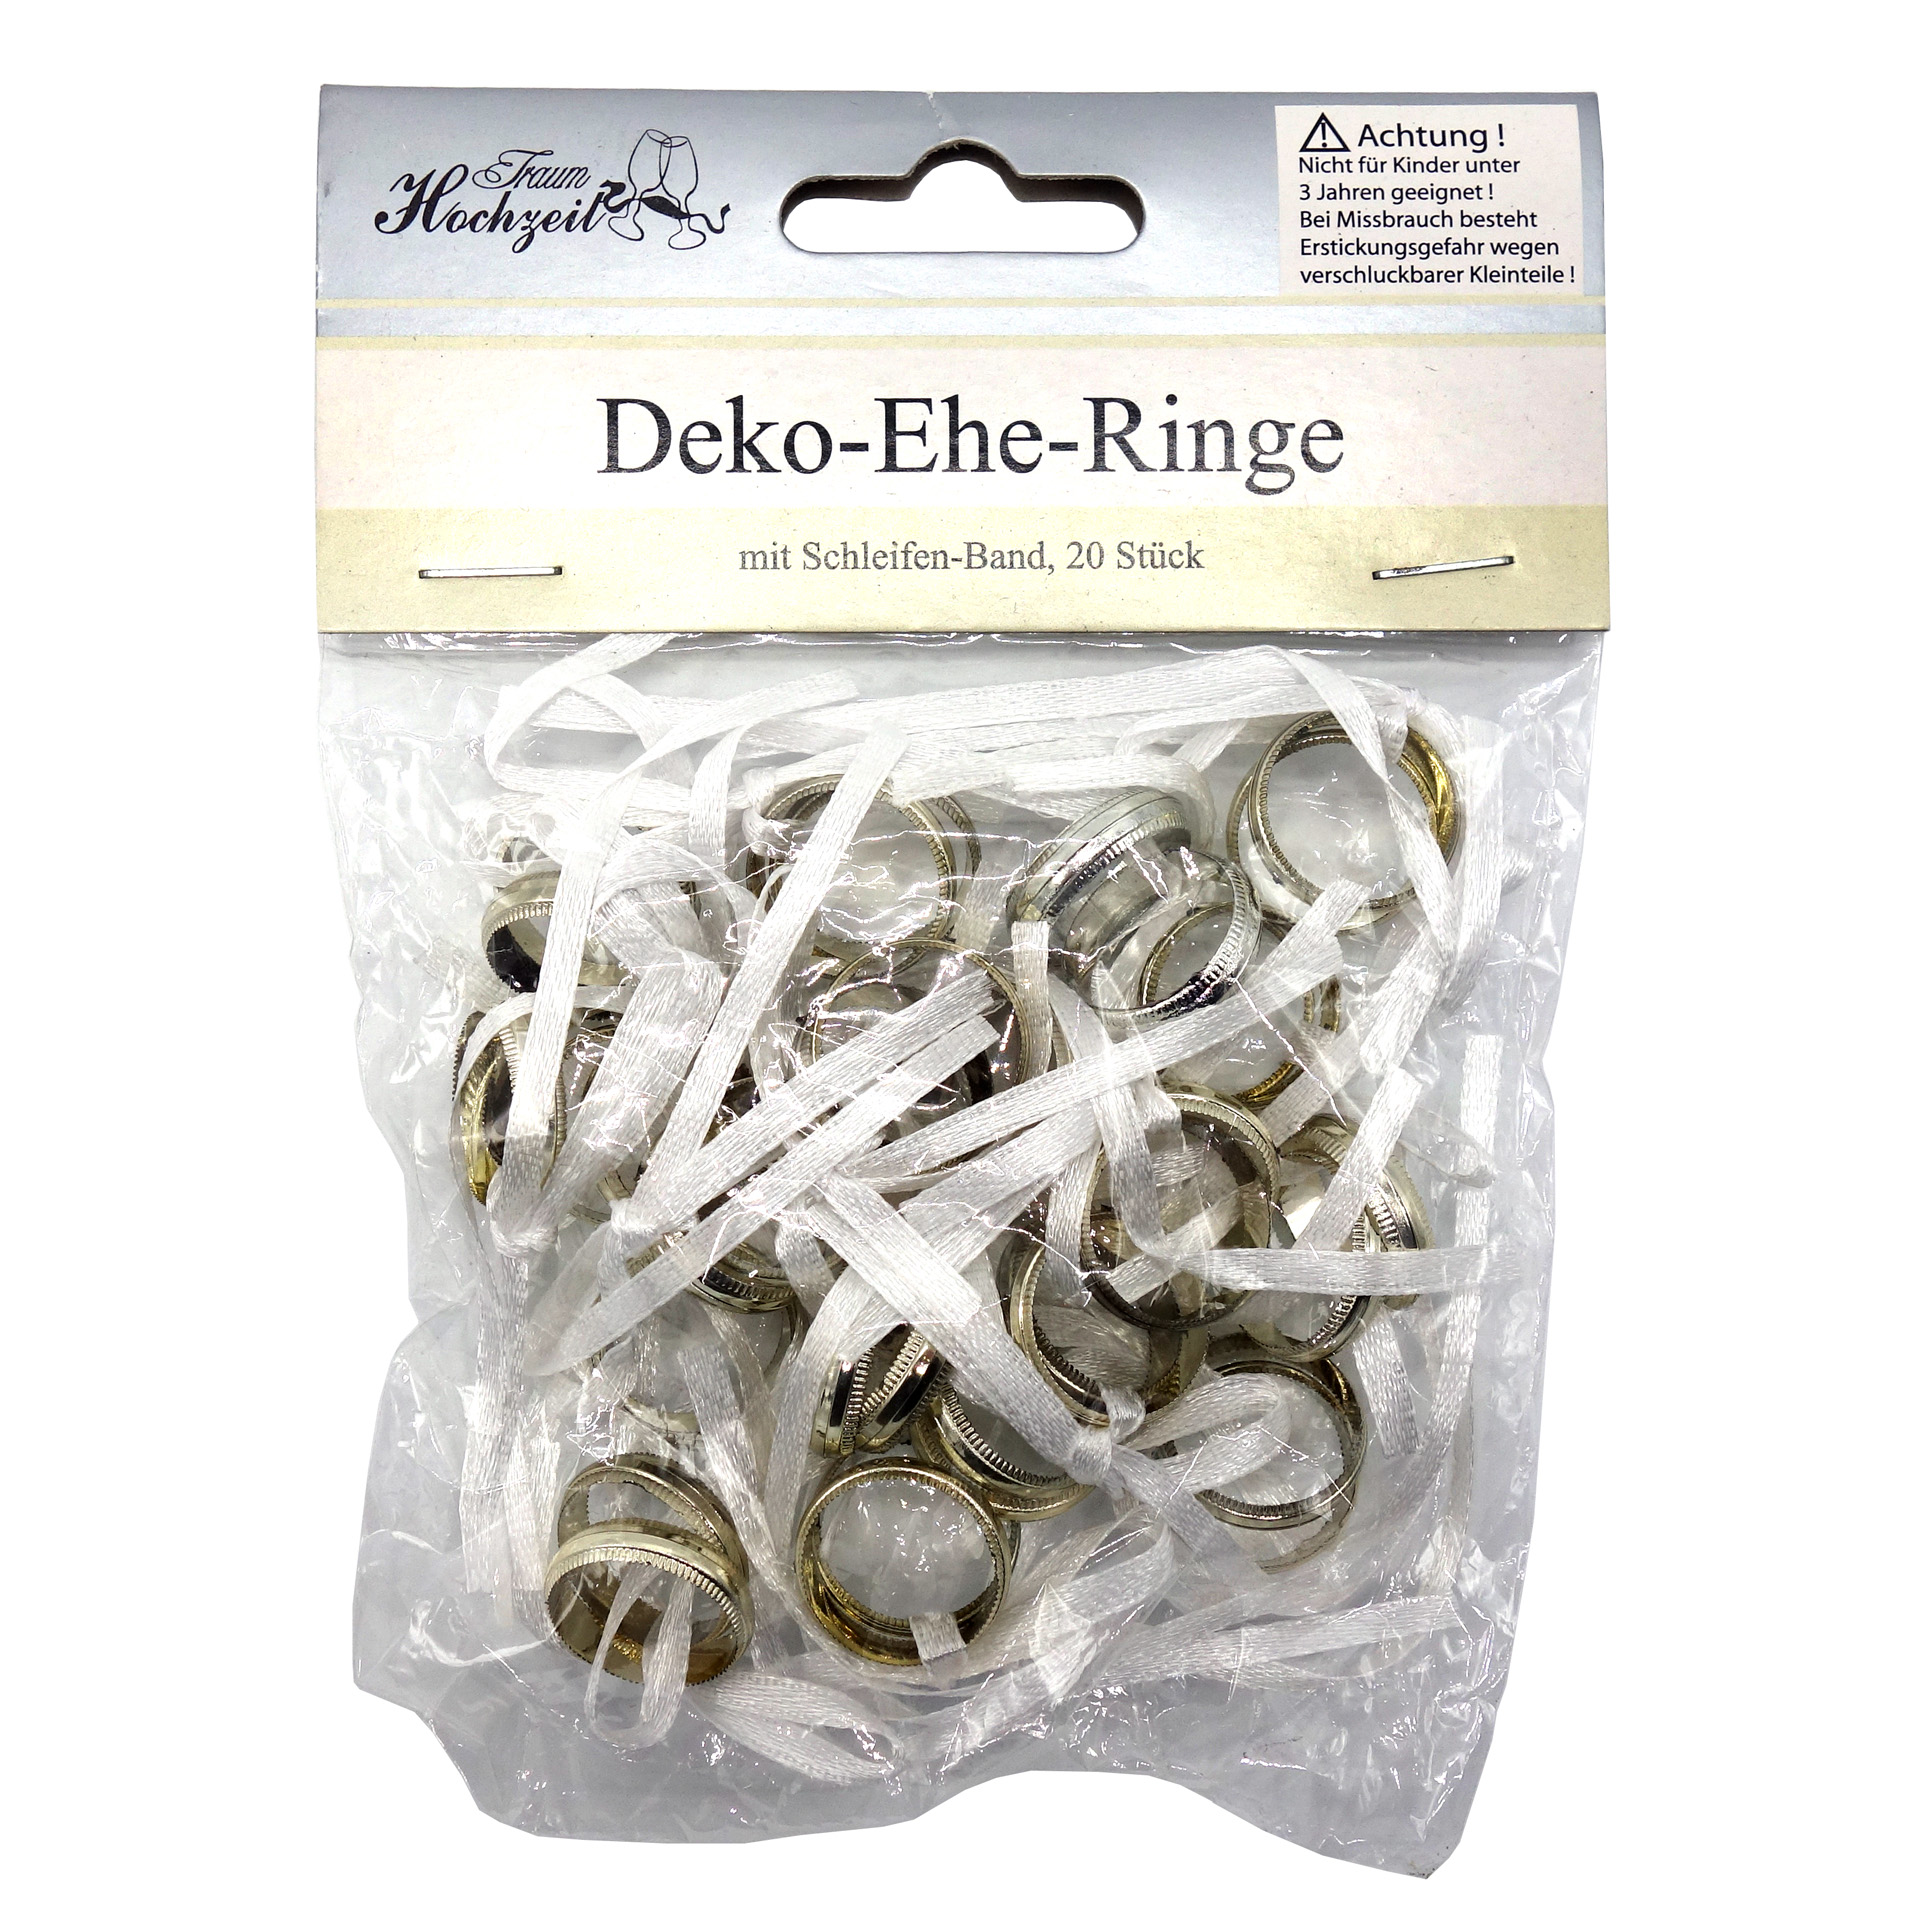 Deko-Ehe-Ringe mit Schleifenband